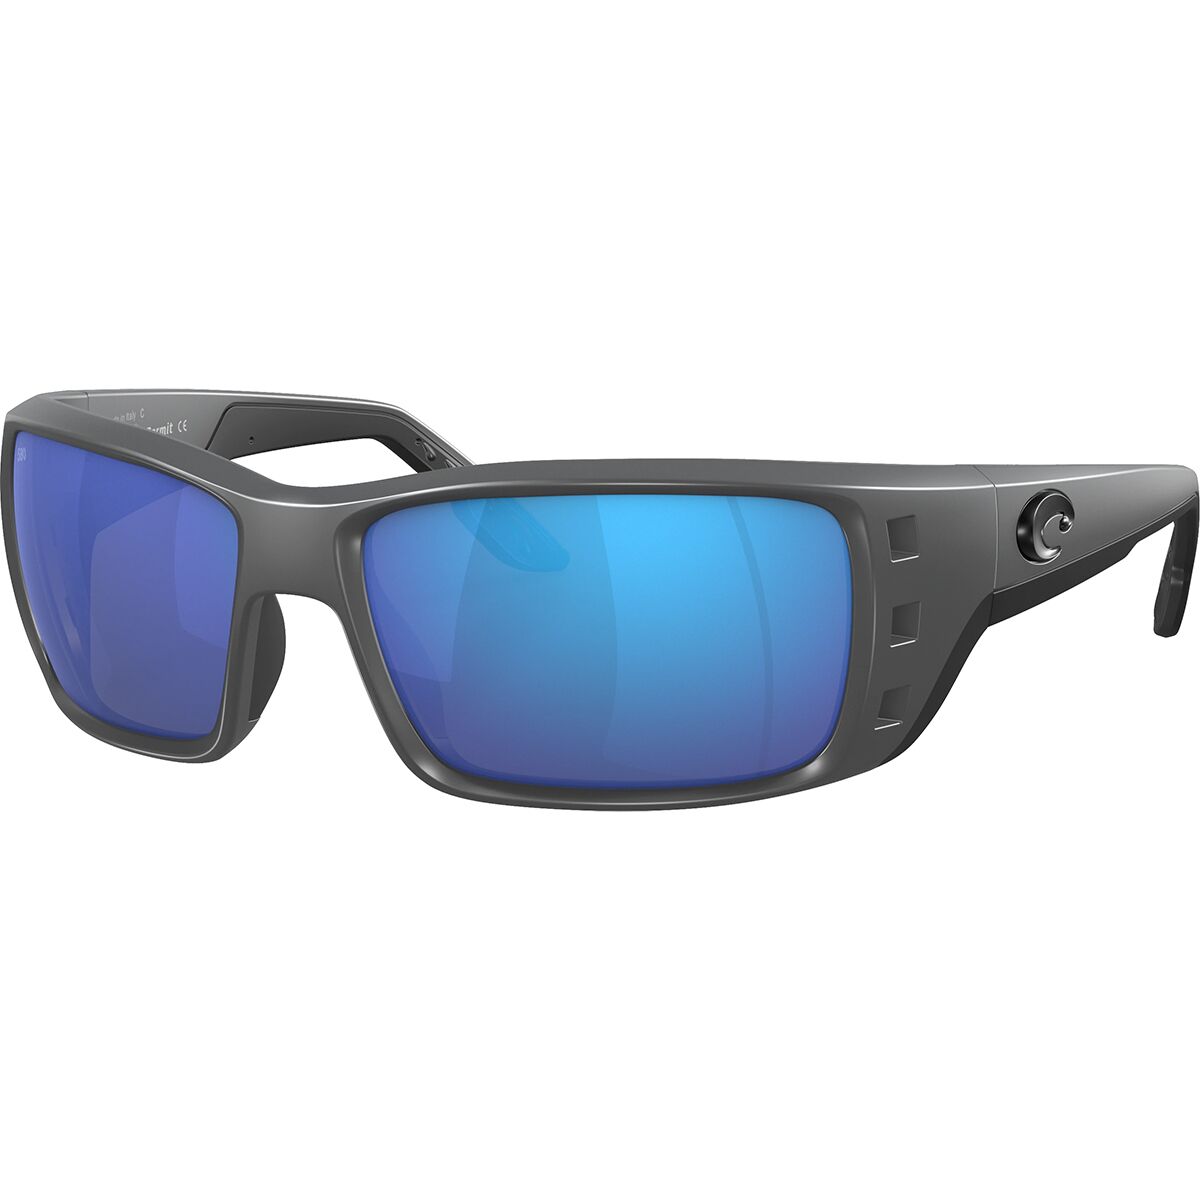 Pre-owned Costa Del Mar Costa Permit 580g Polarized Sunglasses In Matte Gray Blue Mirror 580g